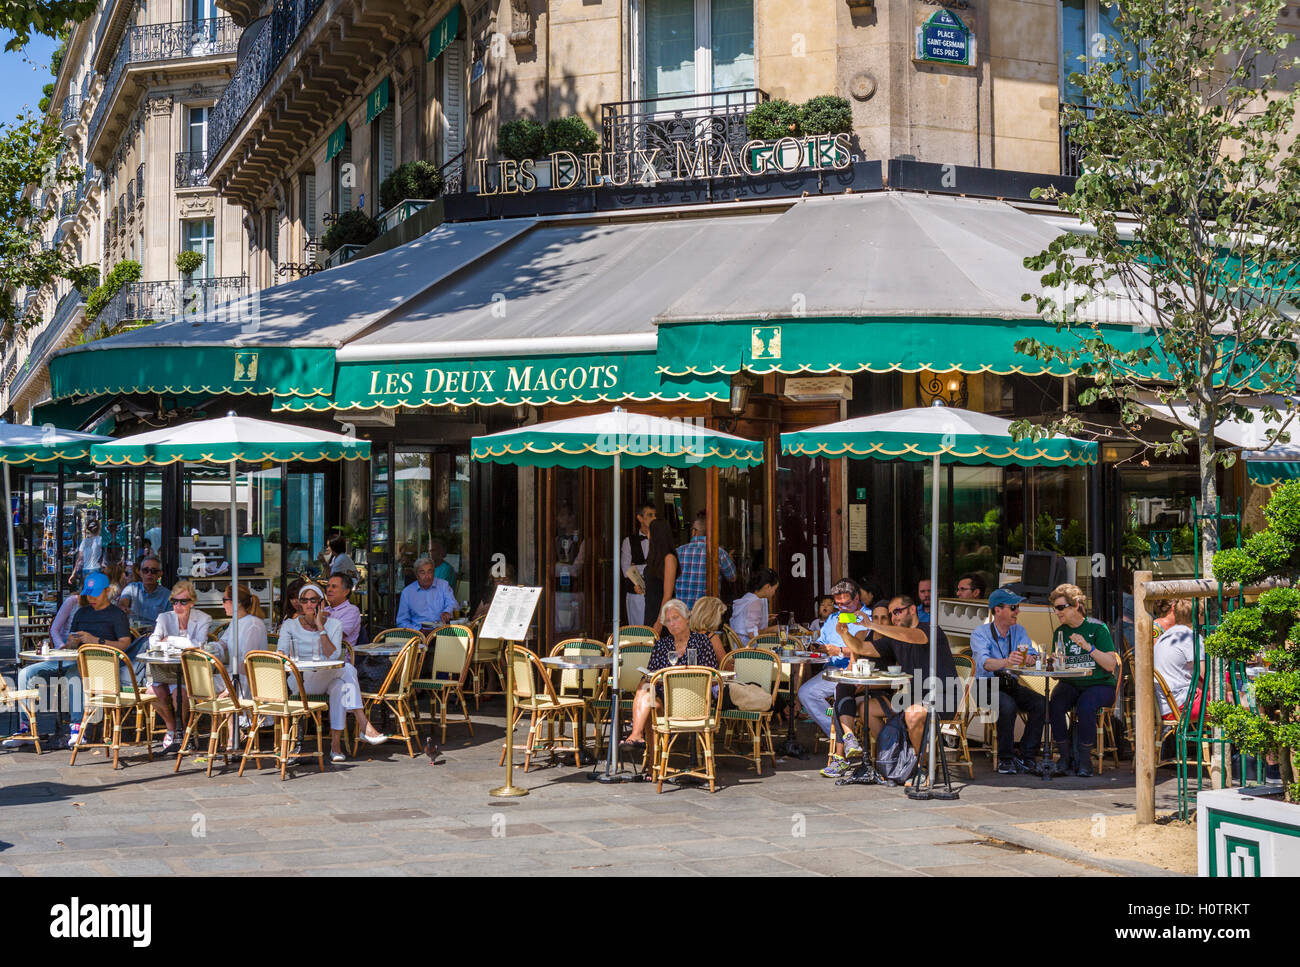 The famous Les Deux Magots café, Place Saint-Germain-des-Prés, Paris, France Stock Photo